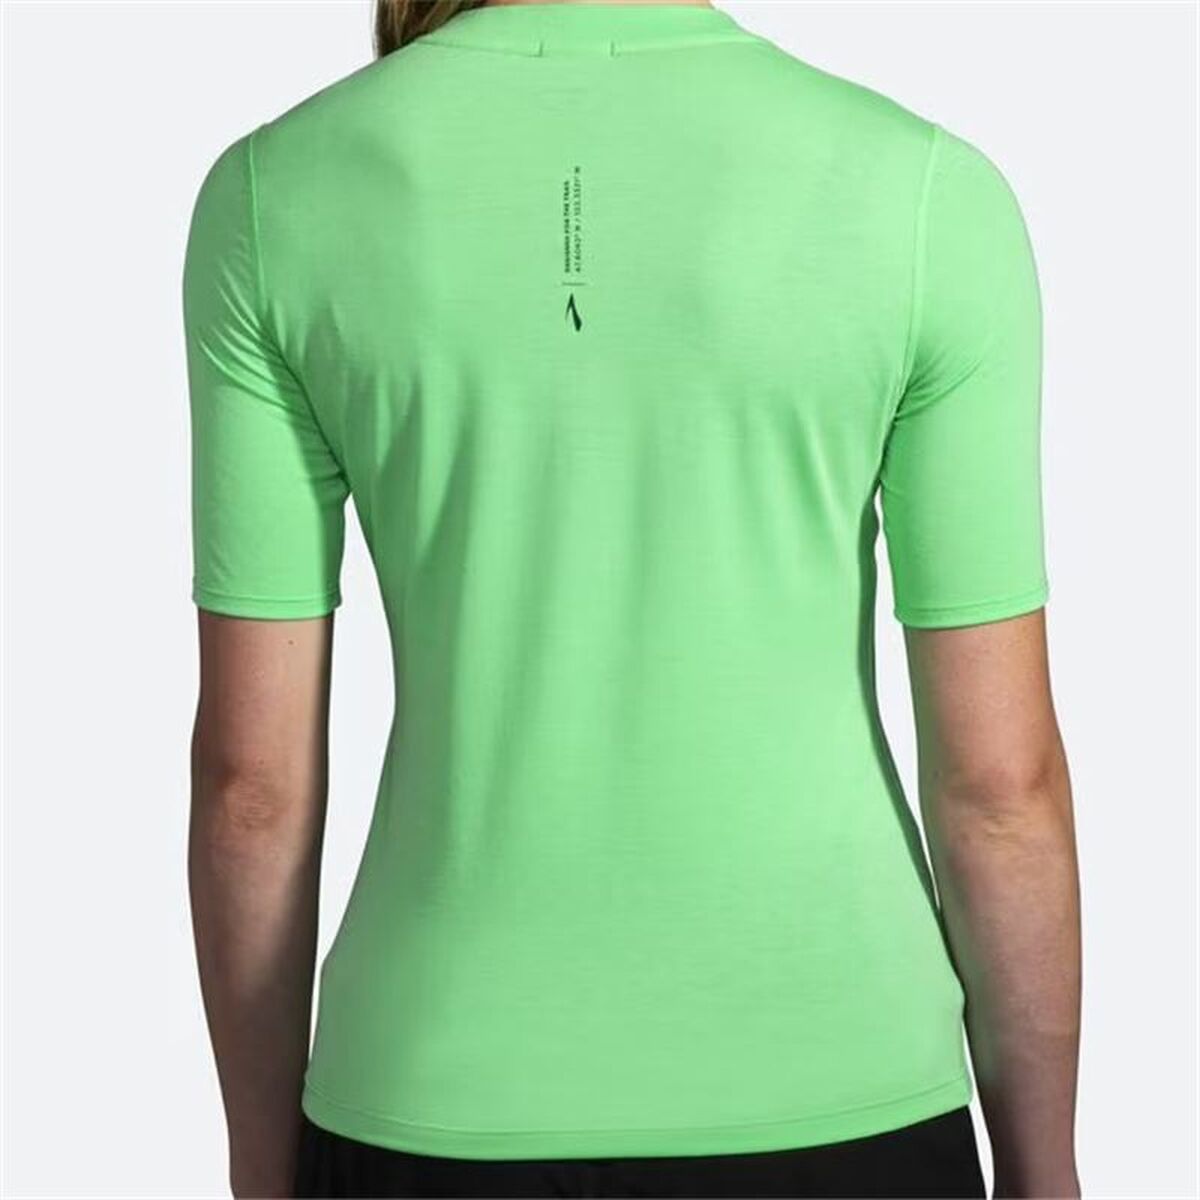 Kaufe Damen Kurzarm-T-Shirt Brooks High Point grün bei AWK Flagship um € 56.00